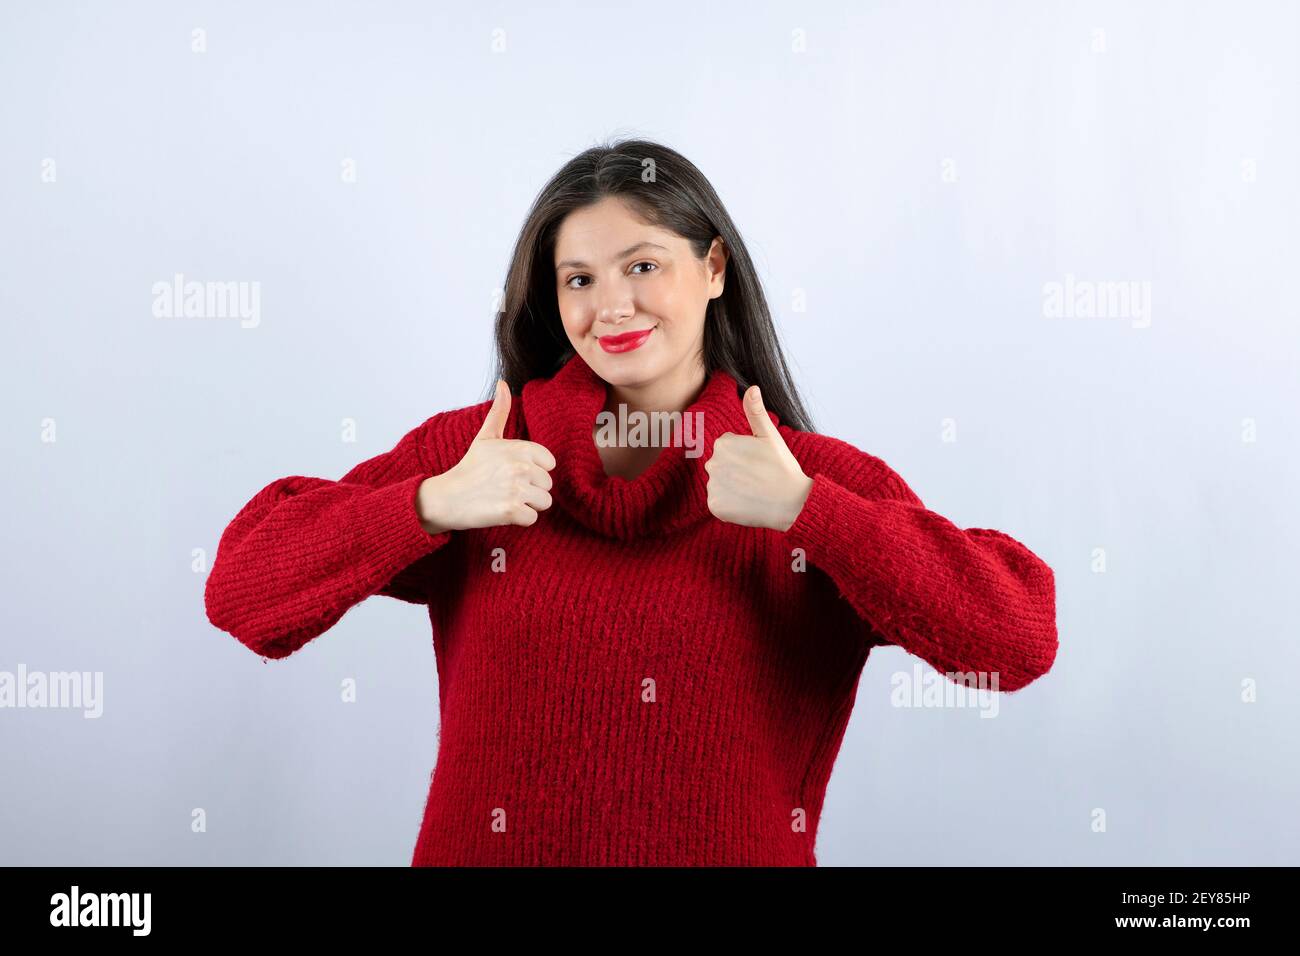 Foto von einer zufrieden jungen Frau in roten Pullover zeigt Daumen hoch Stockfoto